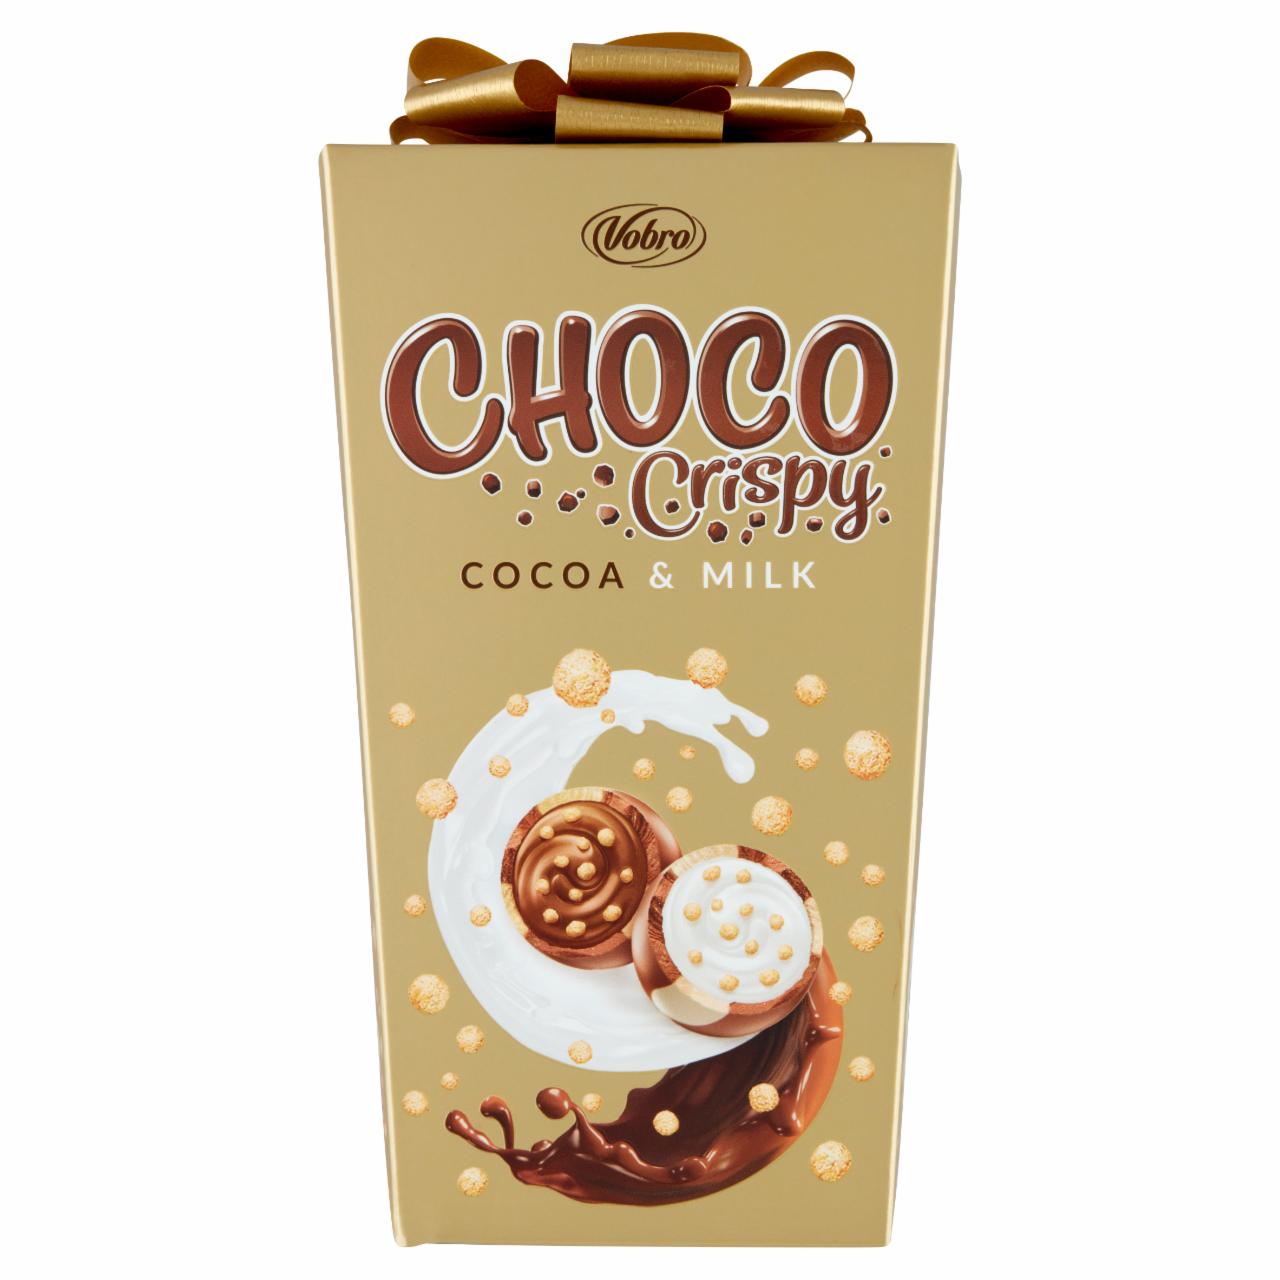 Zdjęcia - Vobro Choco Crispy Praliny nadziewane kremem kakaowym kremem mlecznym i chrupkami 180 g